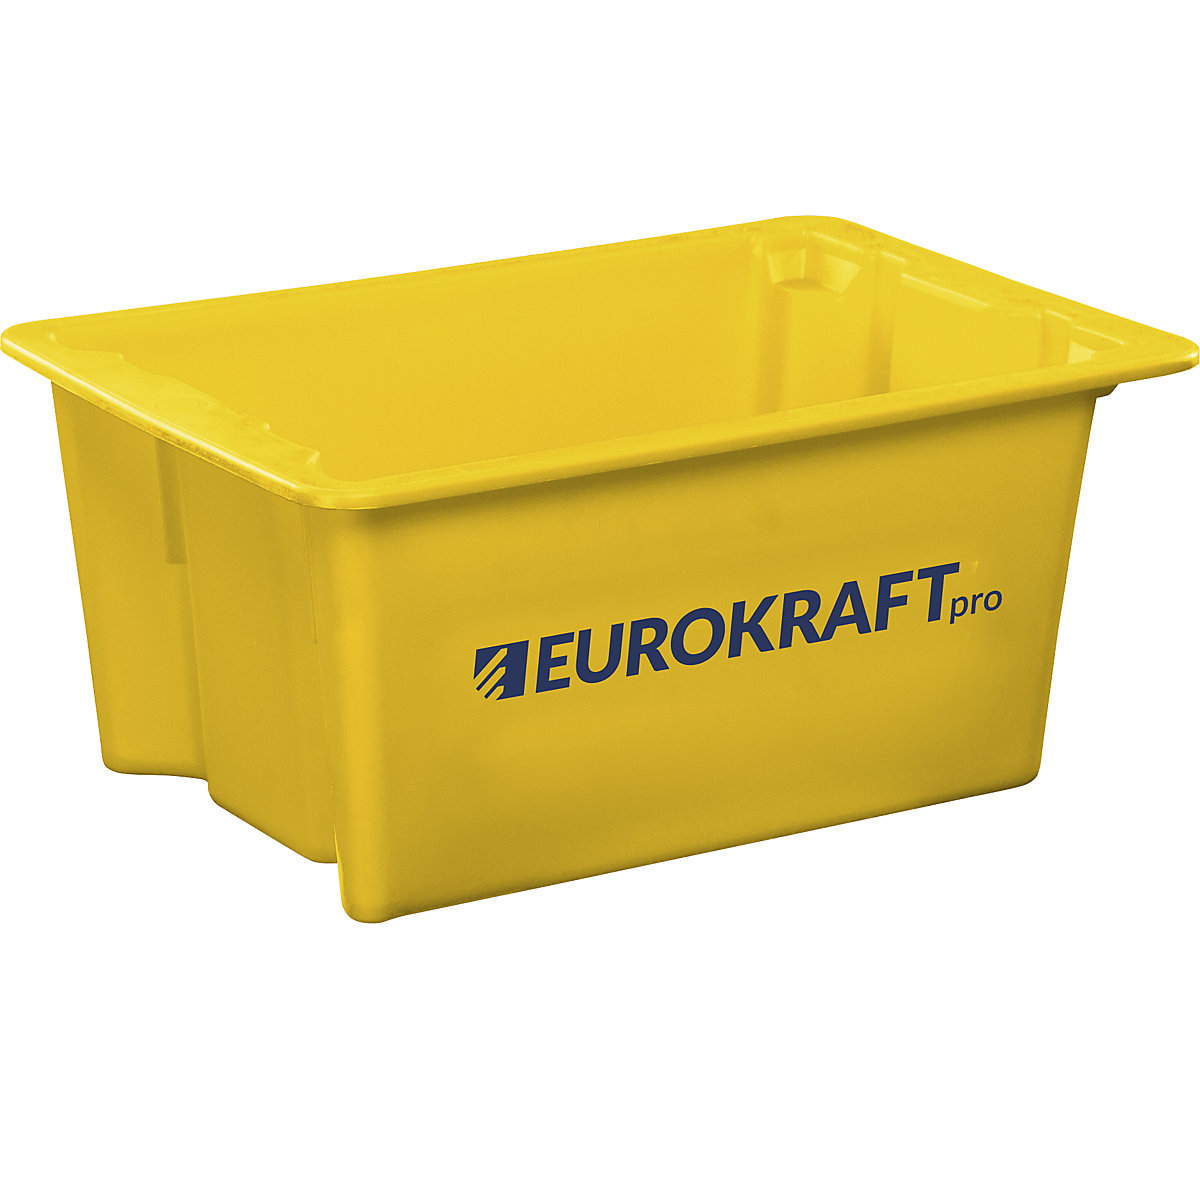 EUROKRAFTpro – Spremnik za slaganje od polipropilena pogodnog za kontakt s prehrambenim proizvodima, volumen 6 l, pak. 4 kom., zatvorene stijenke i dno, u žutoj boji